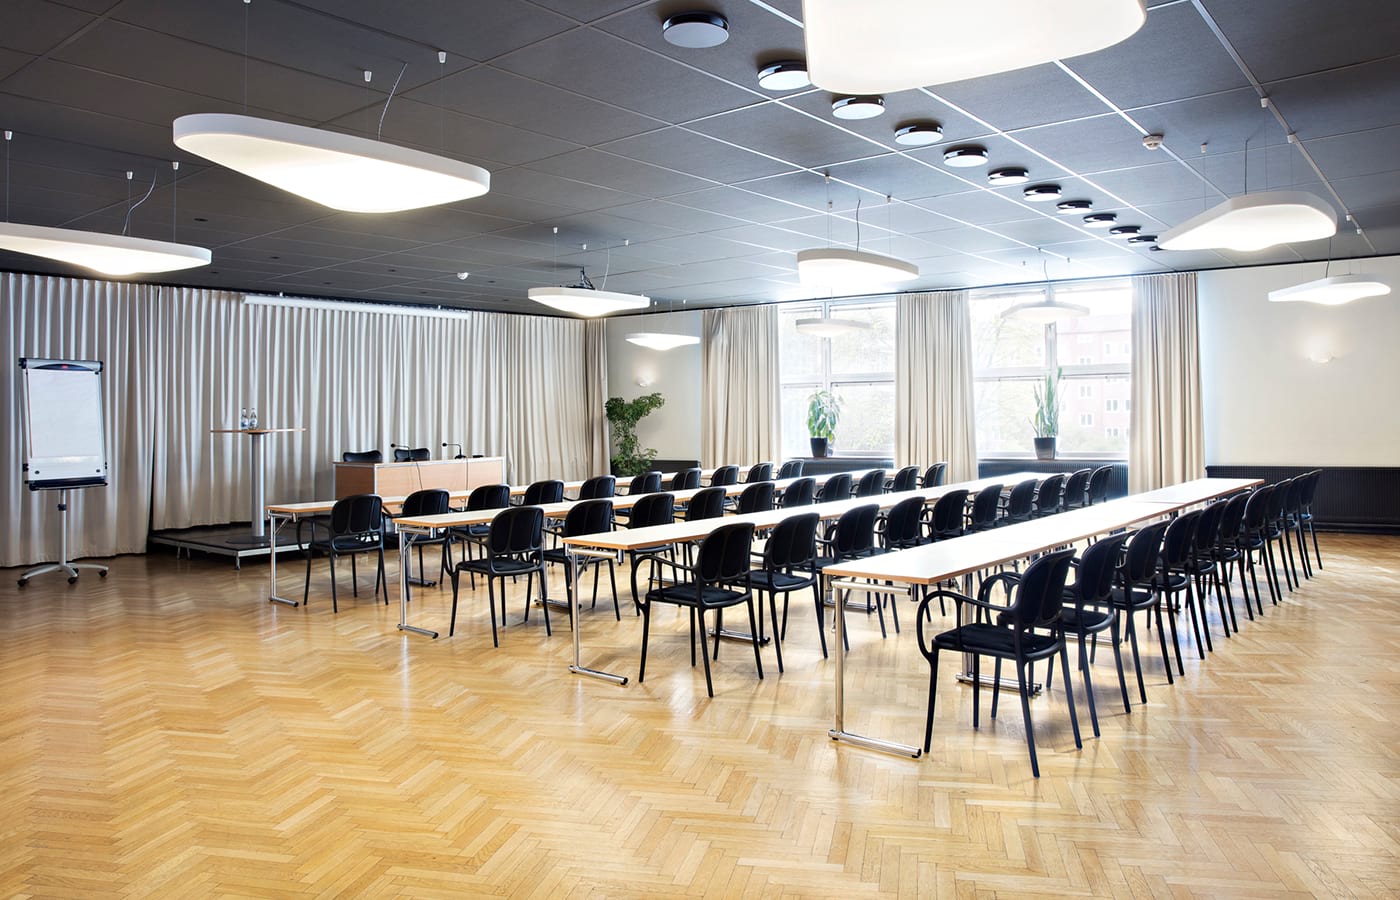 Konferensrum med ljus parkett, avlånga träbord med svarta stolar, vita lampor i taket, stora fönster med vita gardiner, stora gröna blommor.